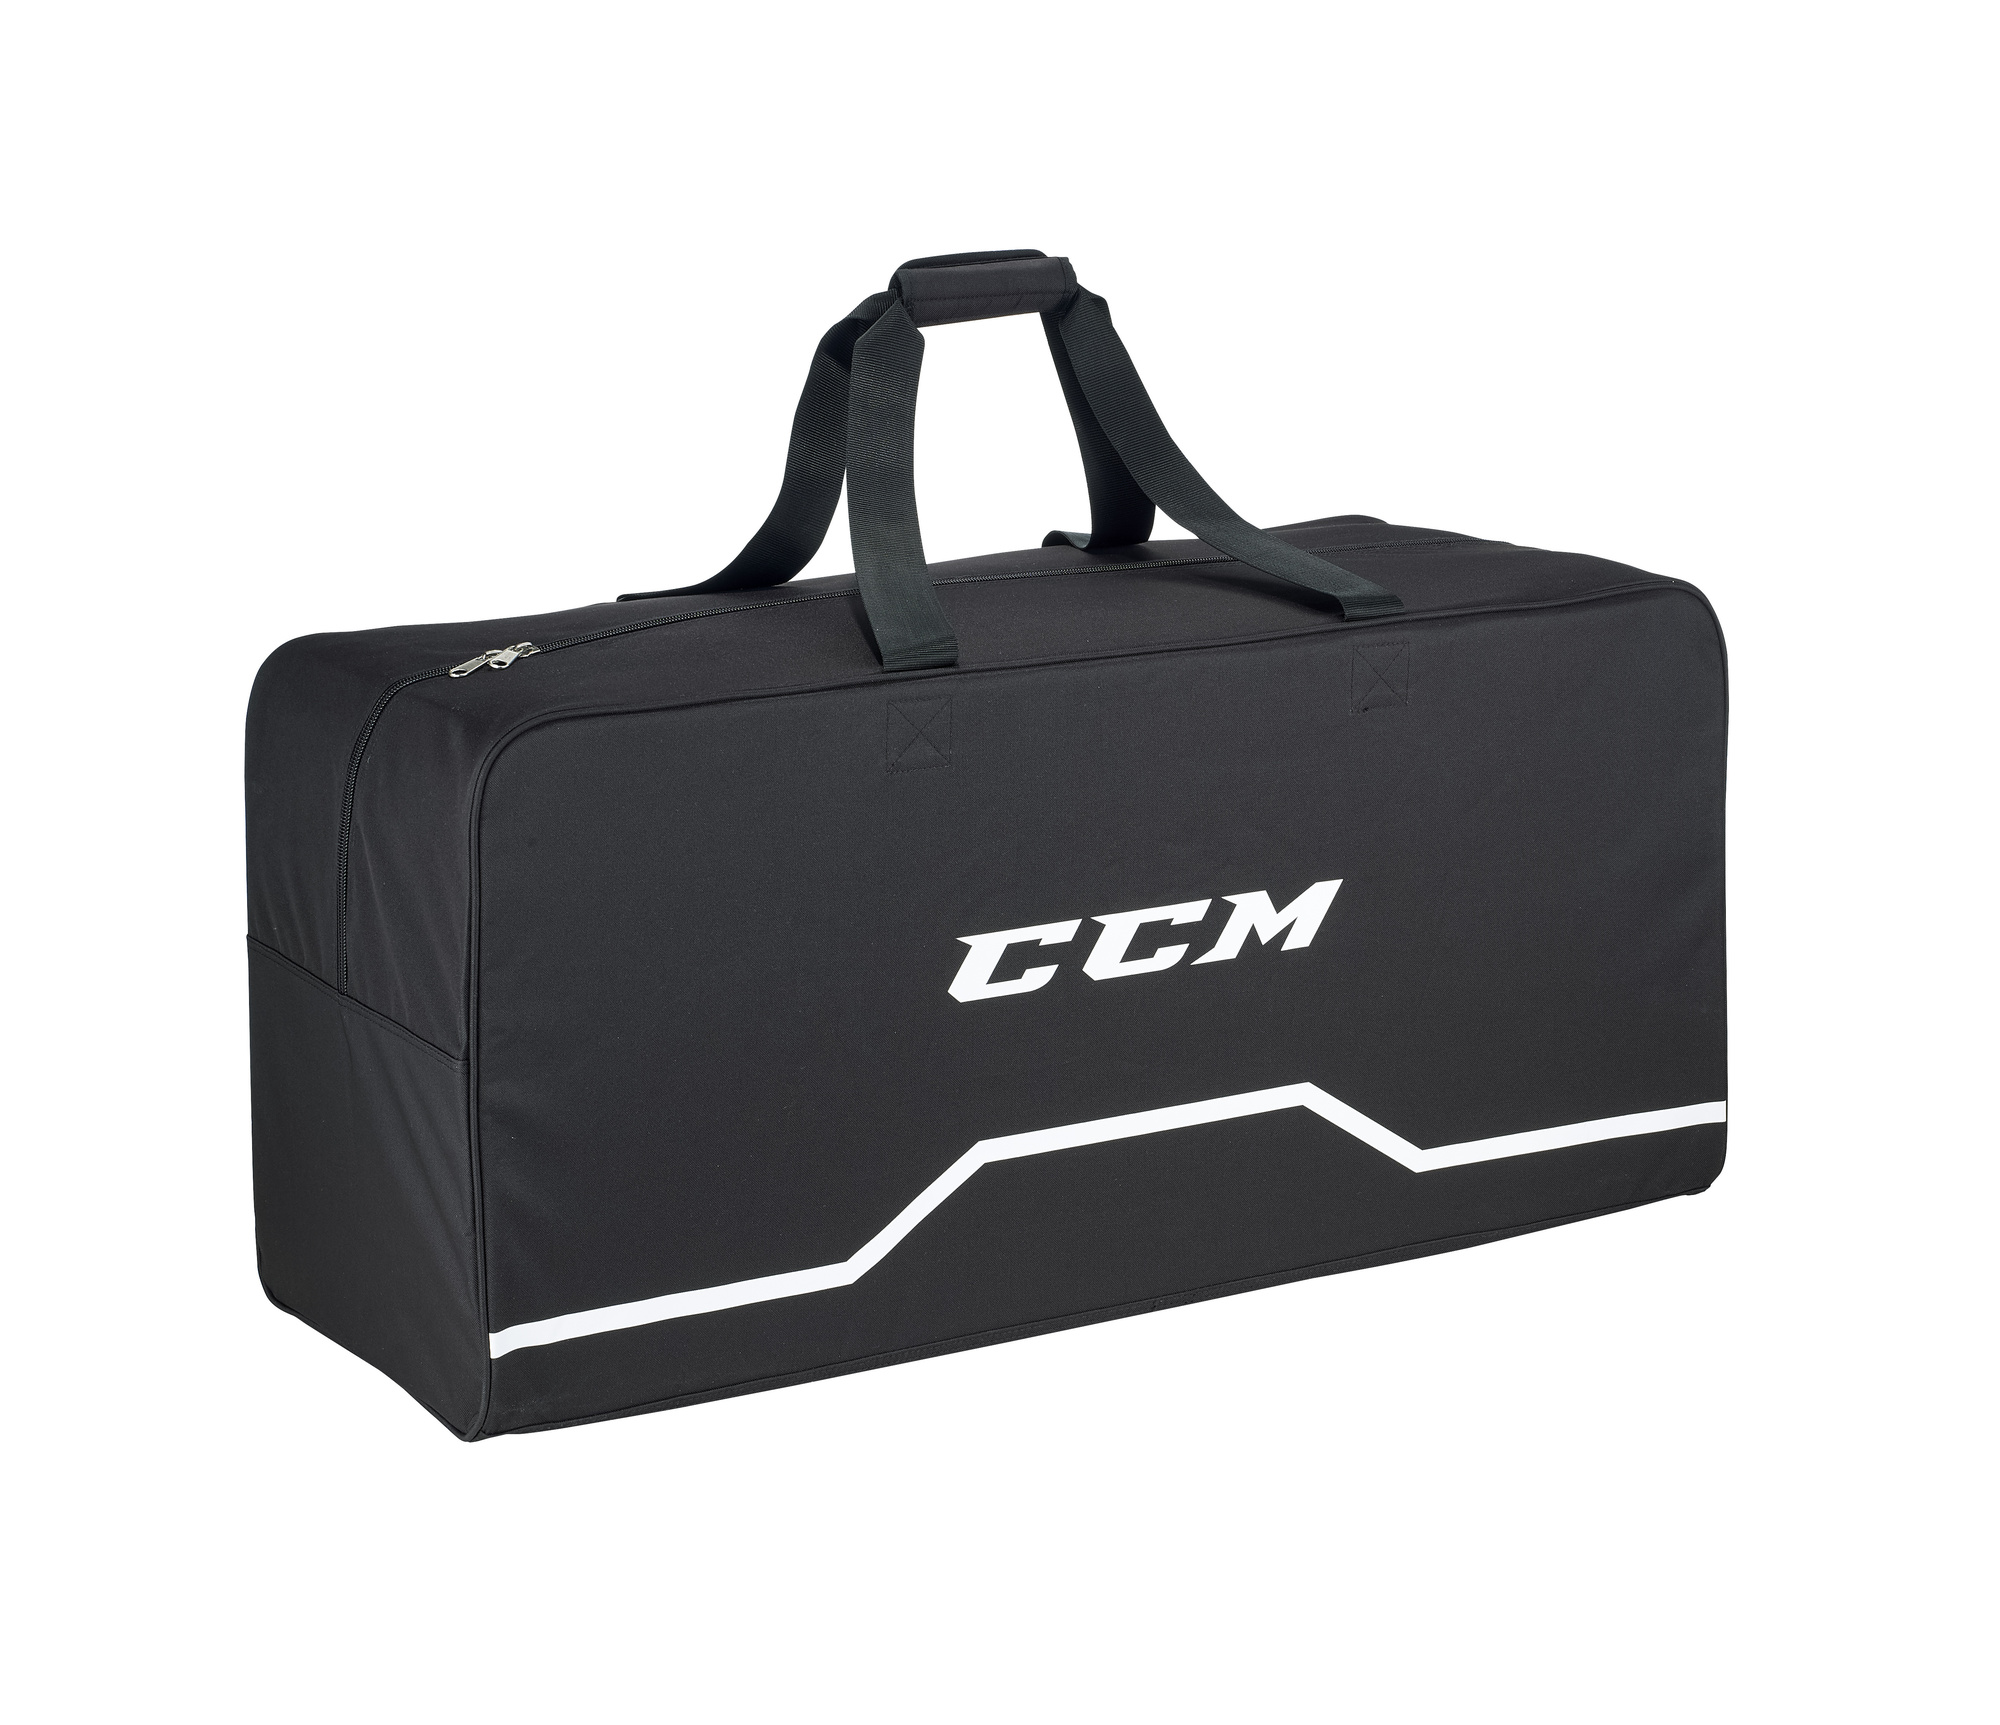 CCM Taška CCM 310 Core Carry Bag